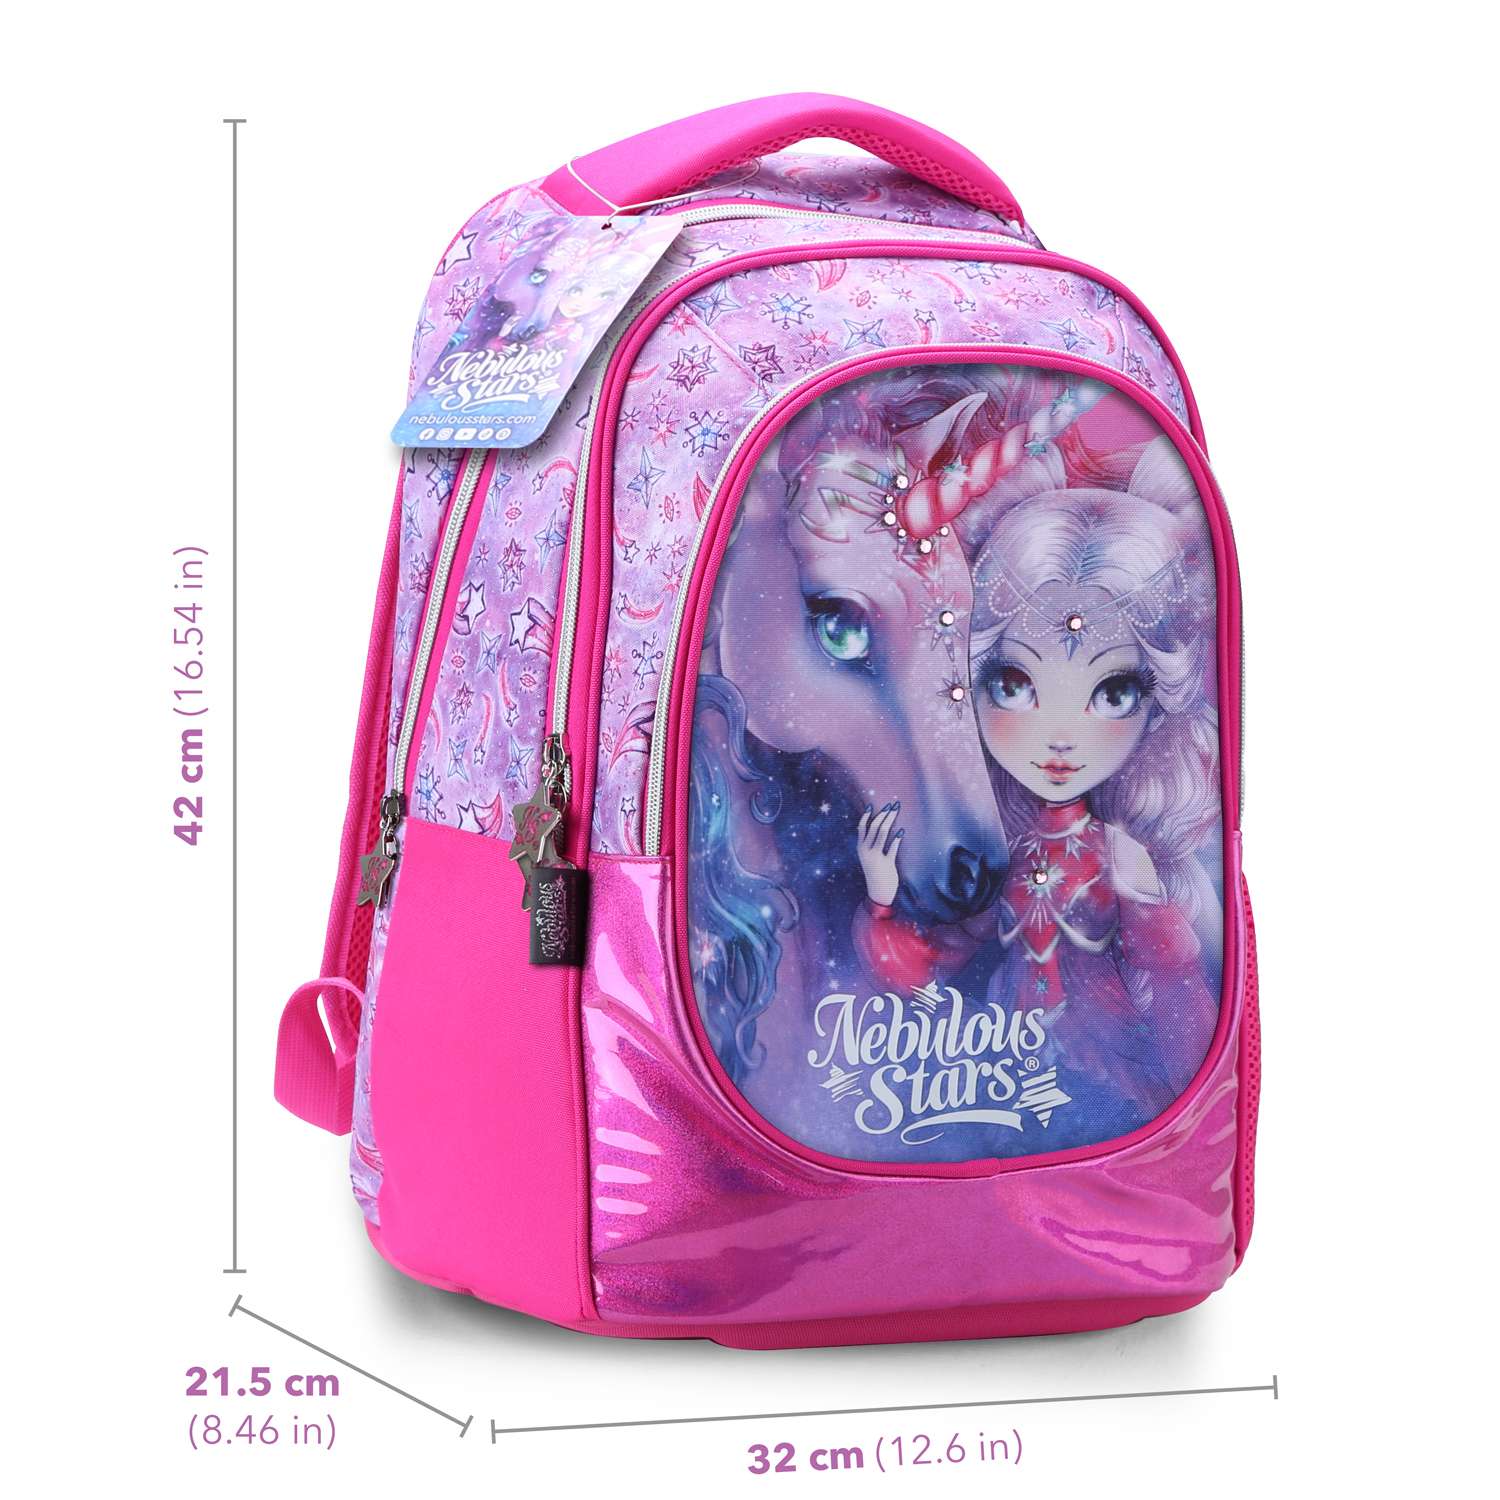 Школьный рюкзак Nebulous Stars для девочек - фото 3